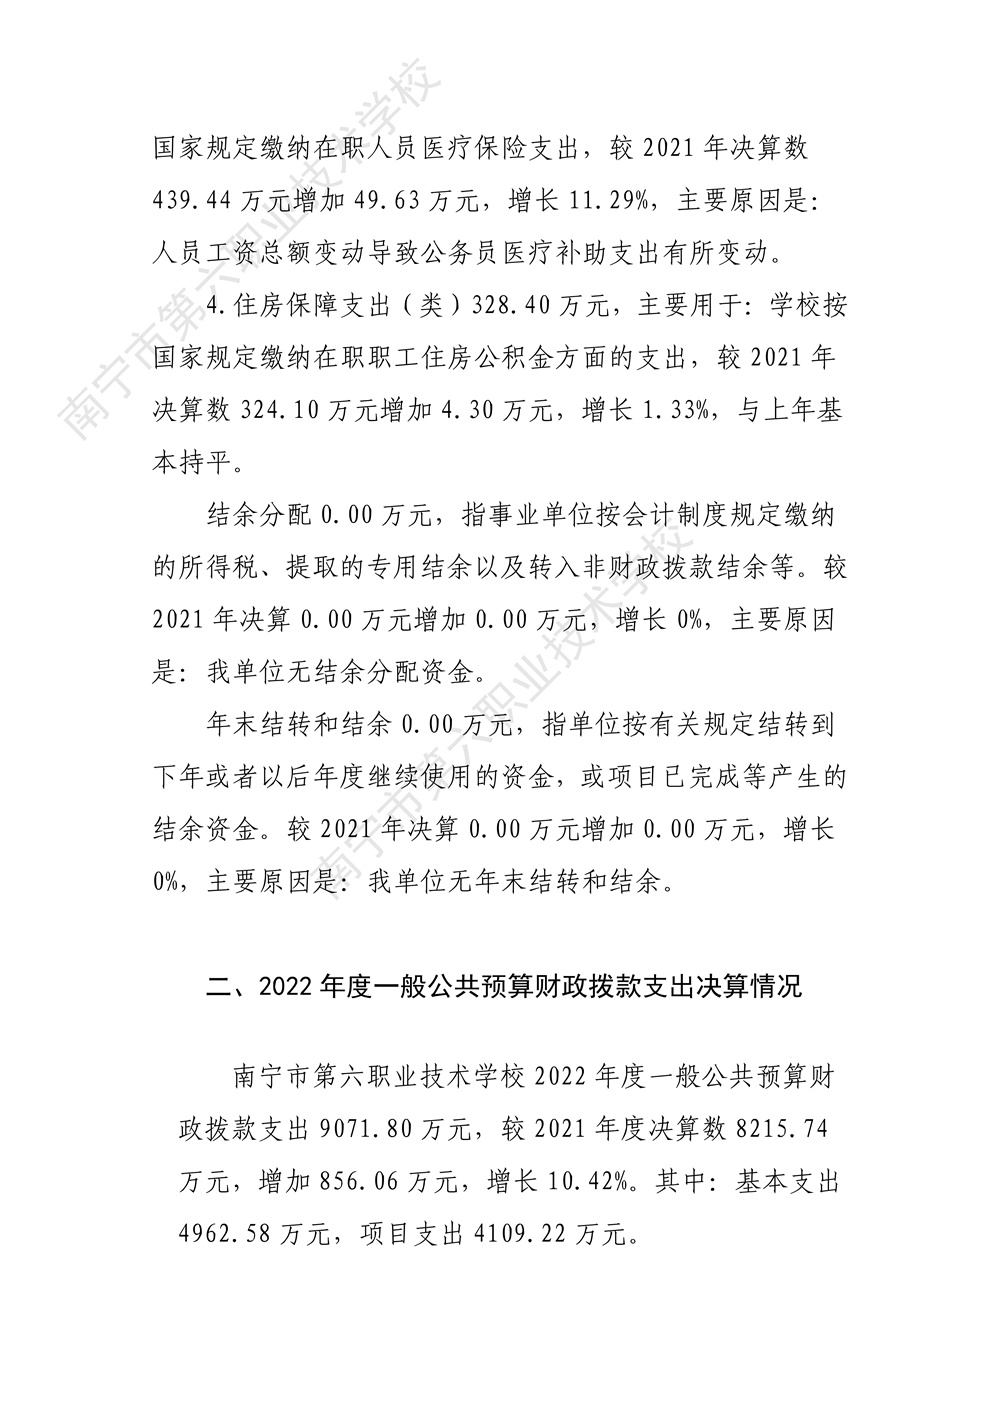 南宁市第六职业技术学校2022年度部门决算公开（终版）_26.jpg